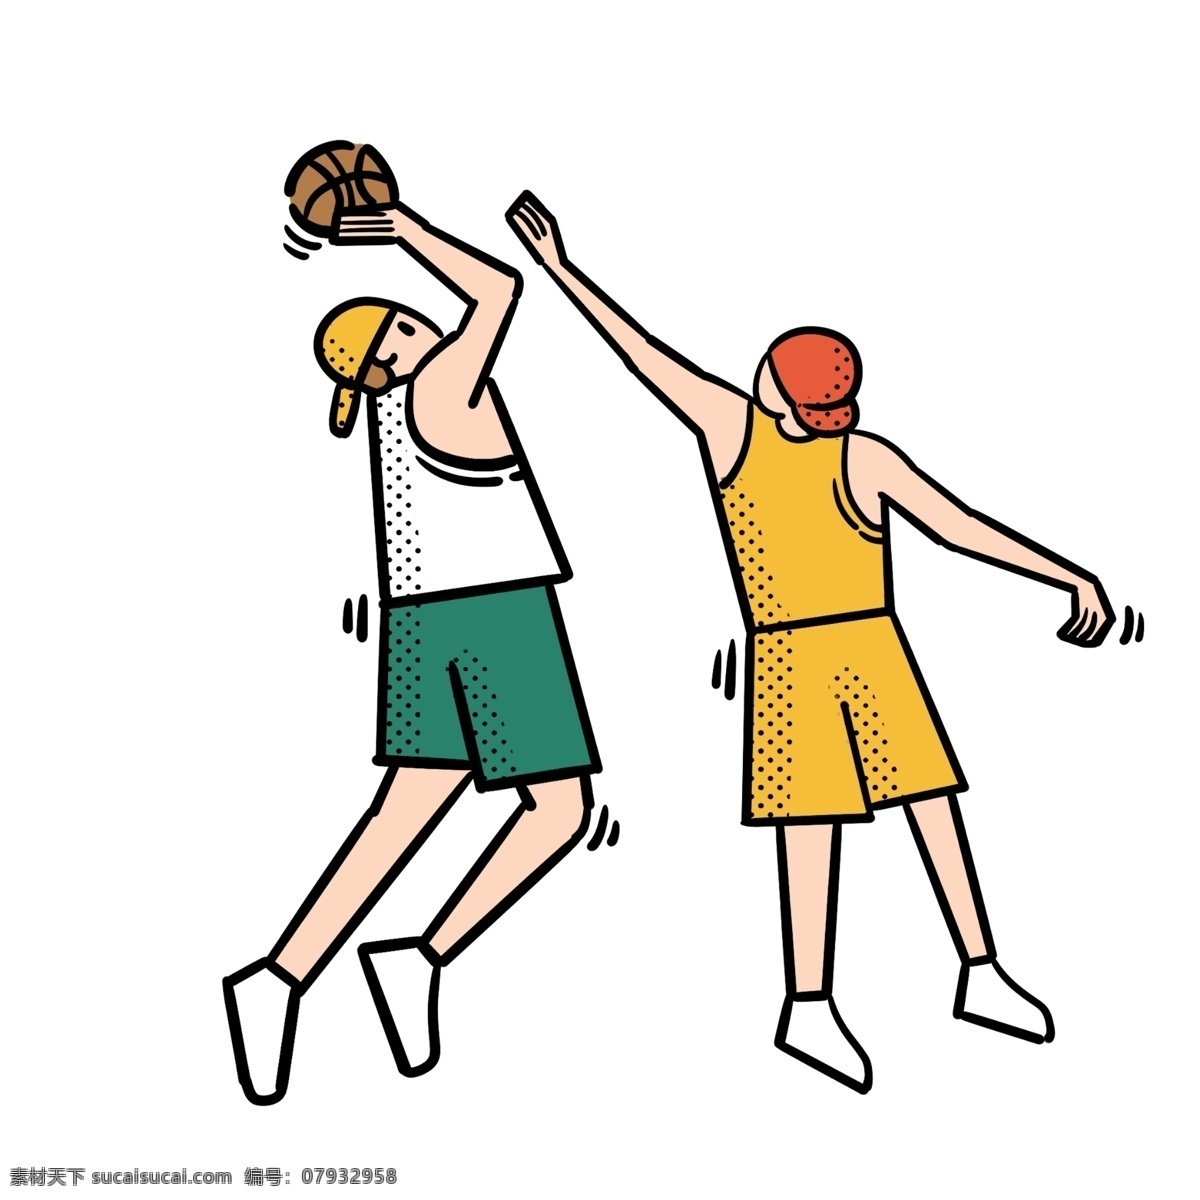 卡通 矢量 免 抠 扁平 可爱 篮球 男生 免抠 打篮球 黄色 绿色 篮球衣 运动 快乐 开心 投篮 阳光 活力 兄弟 帽子